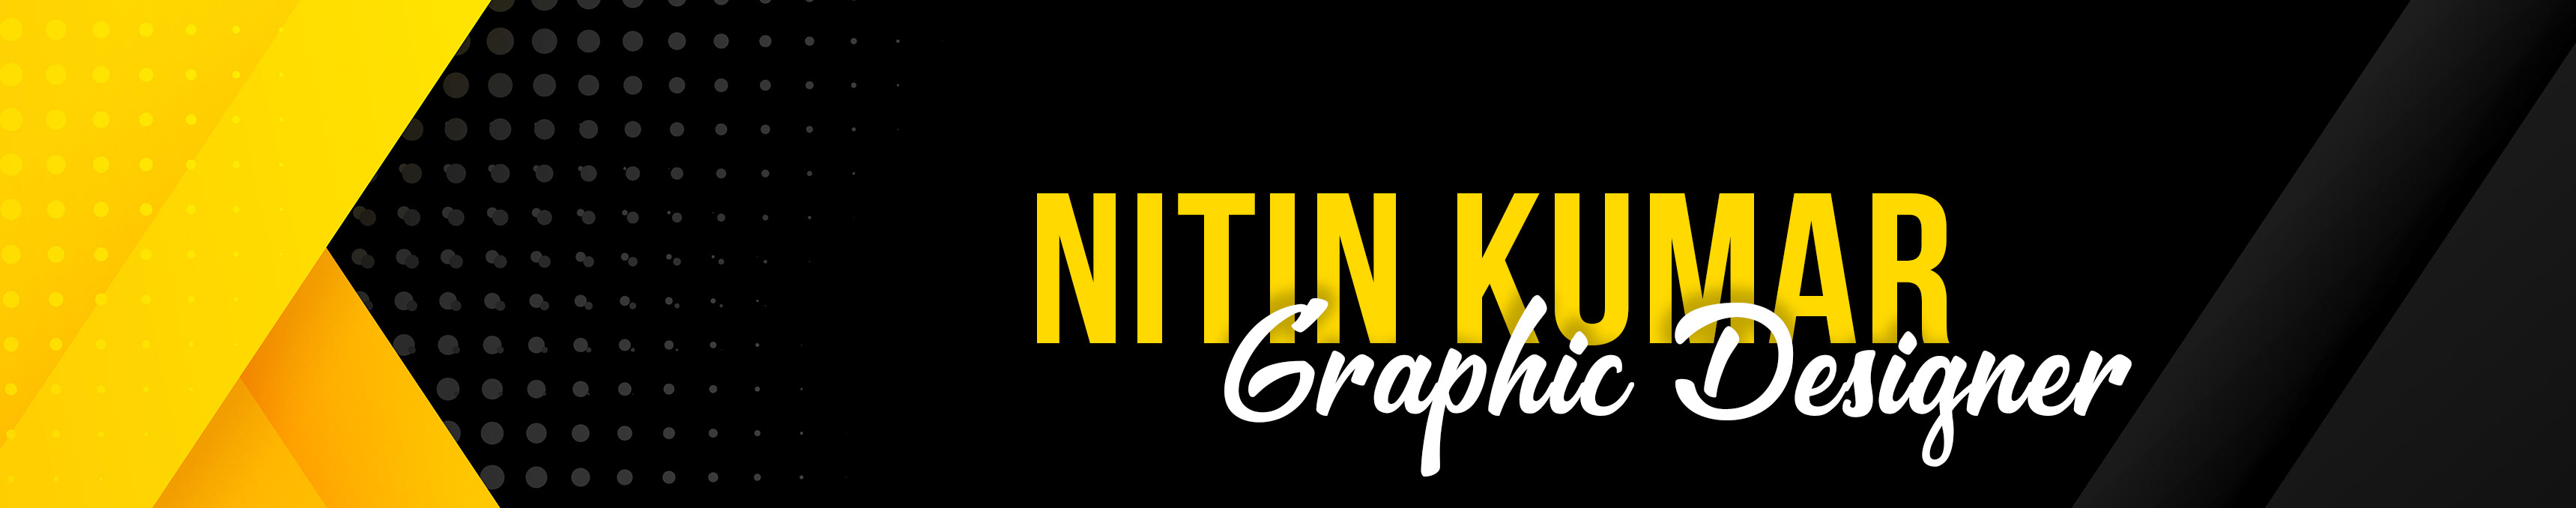 Nitin Kumar 的個人檔案橫幅